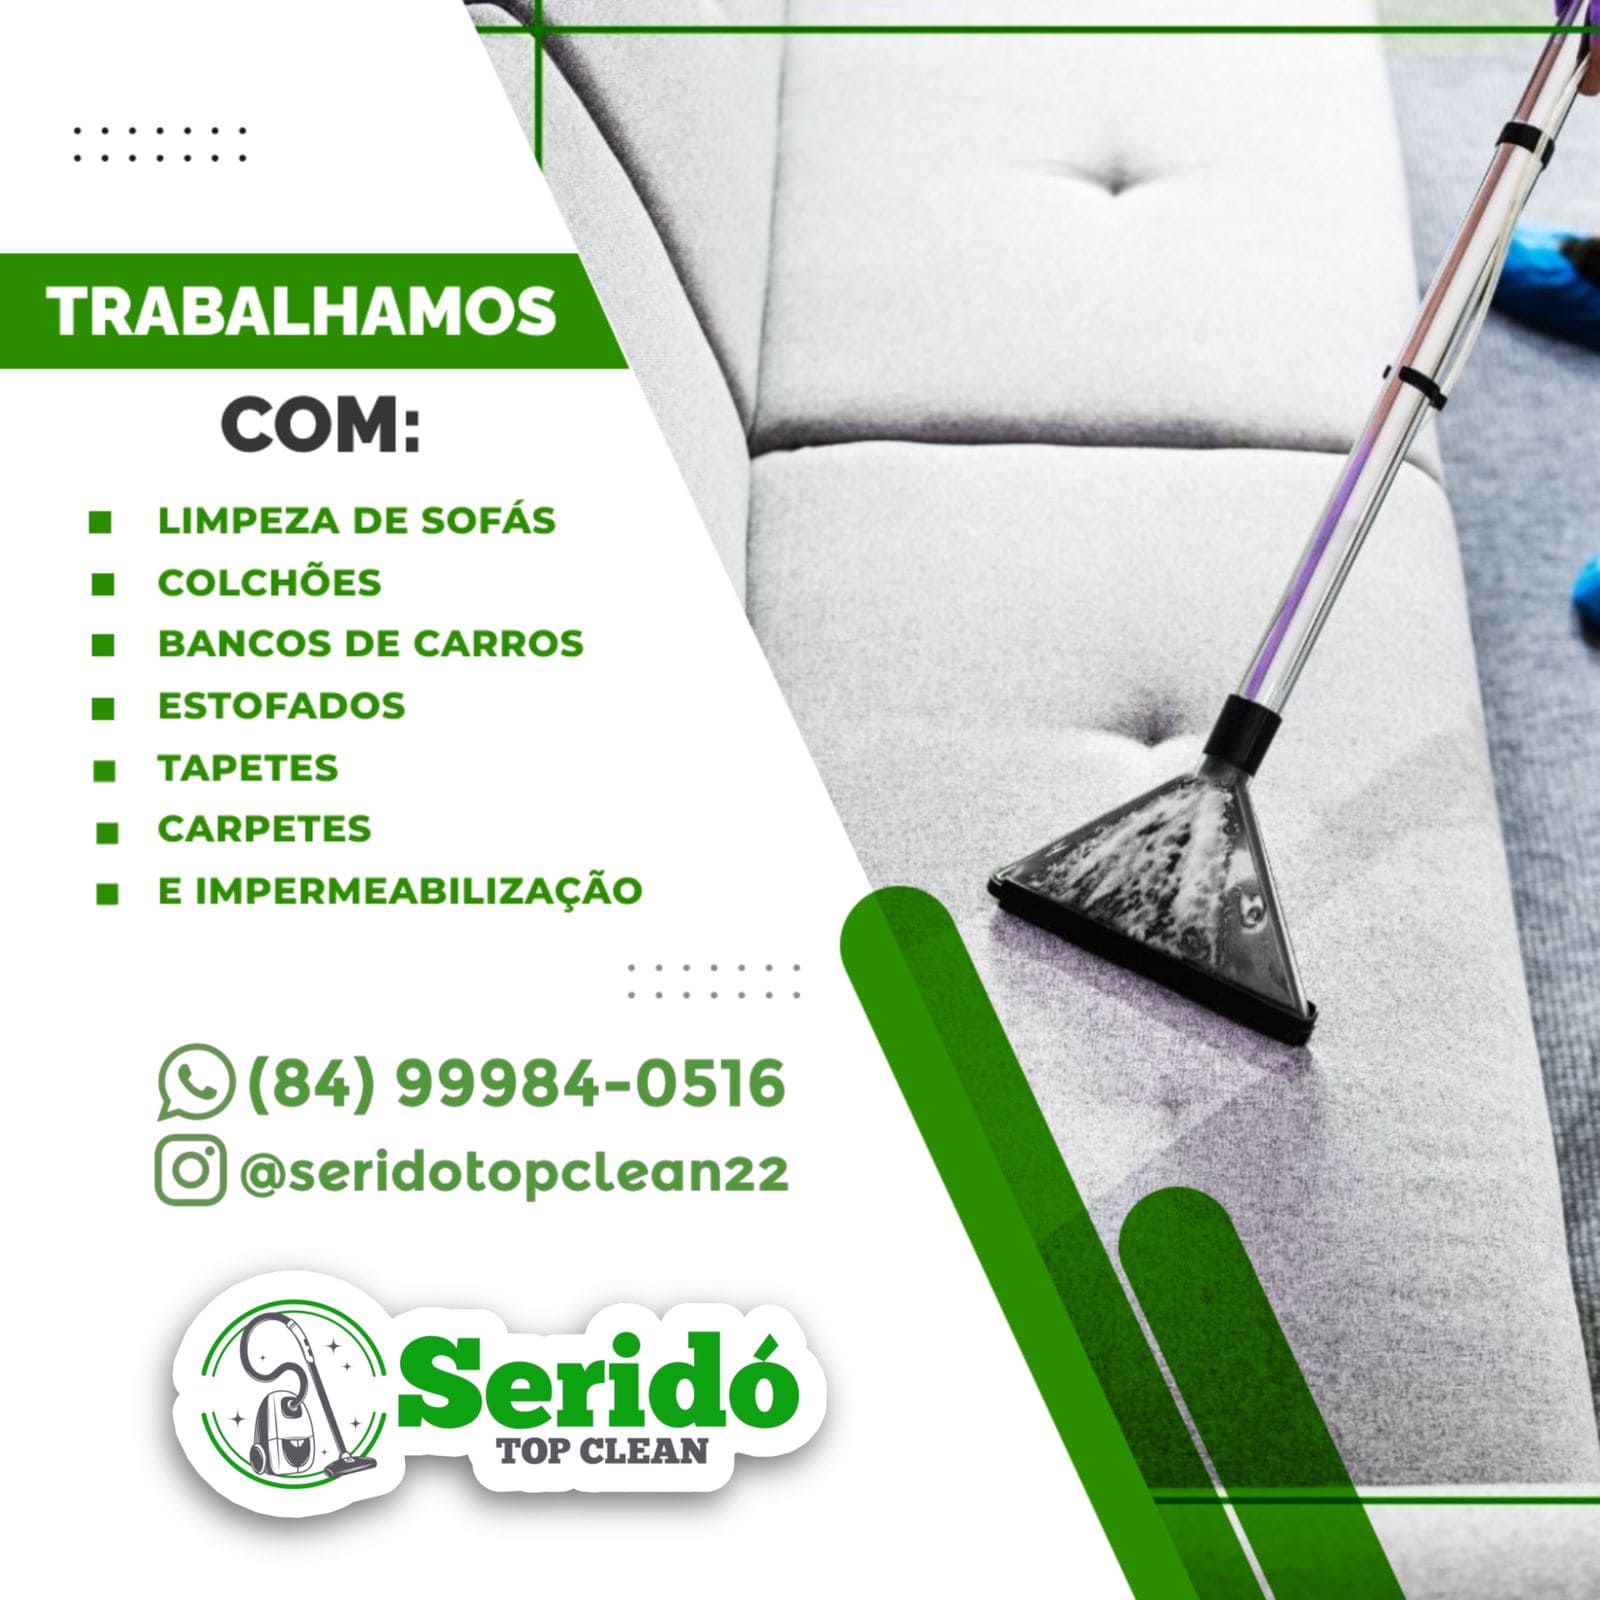 Cerro Corá e região dispõe de um novo serviço, higienização de sofá, colchões, poltronas, tapete, lavagem de bancos e teto de carros, lavagem de carro a seco.